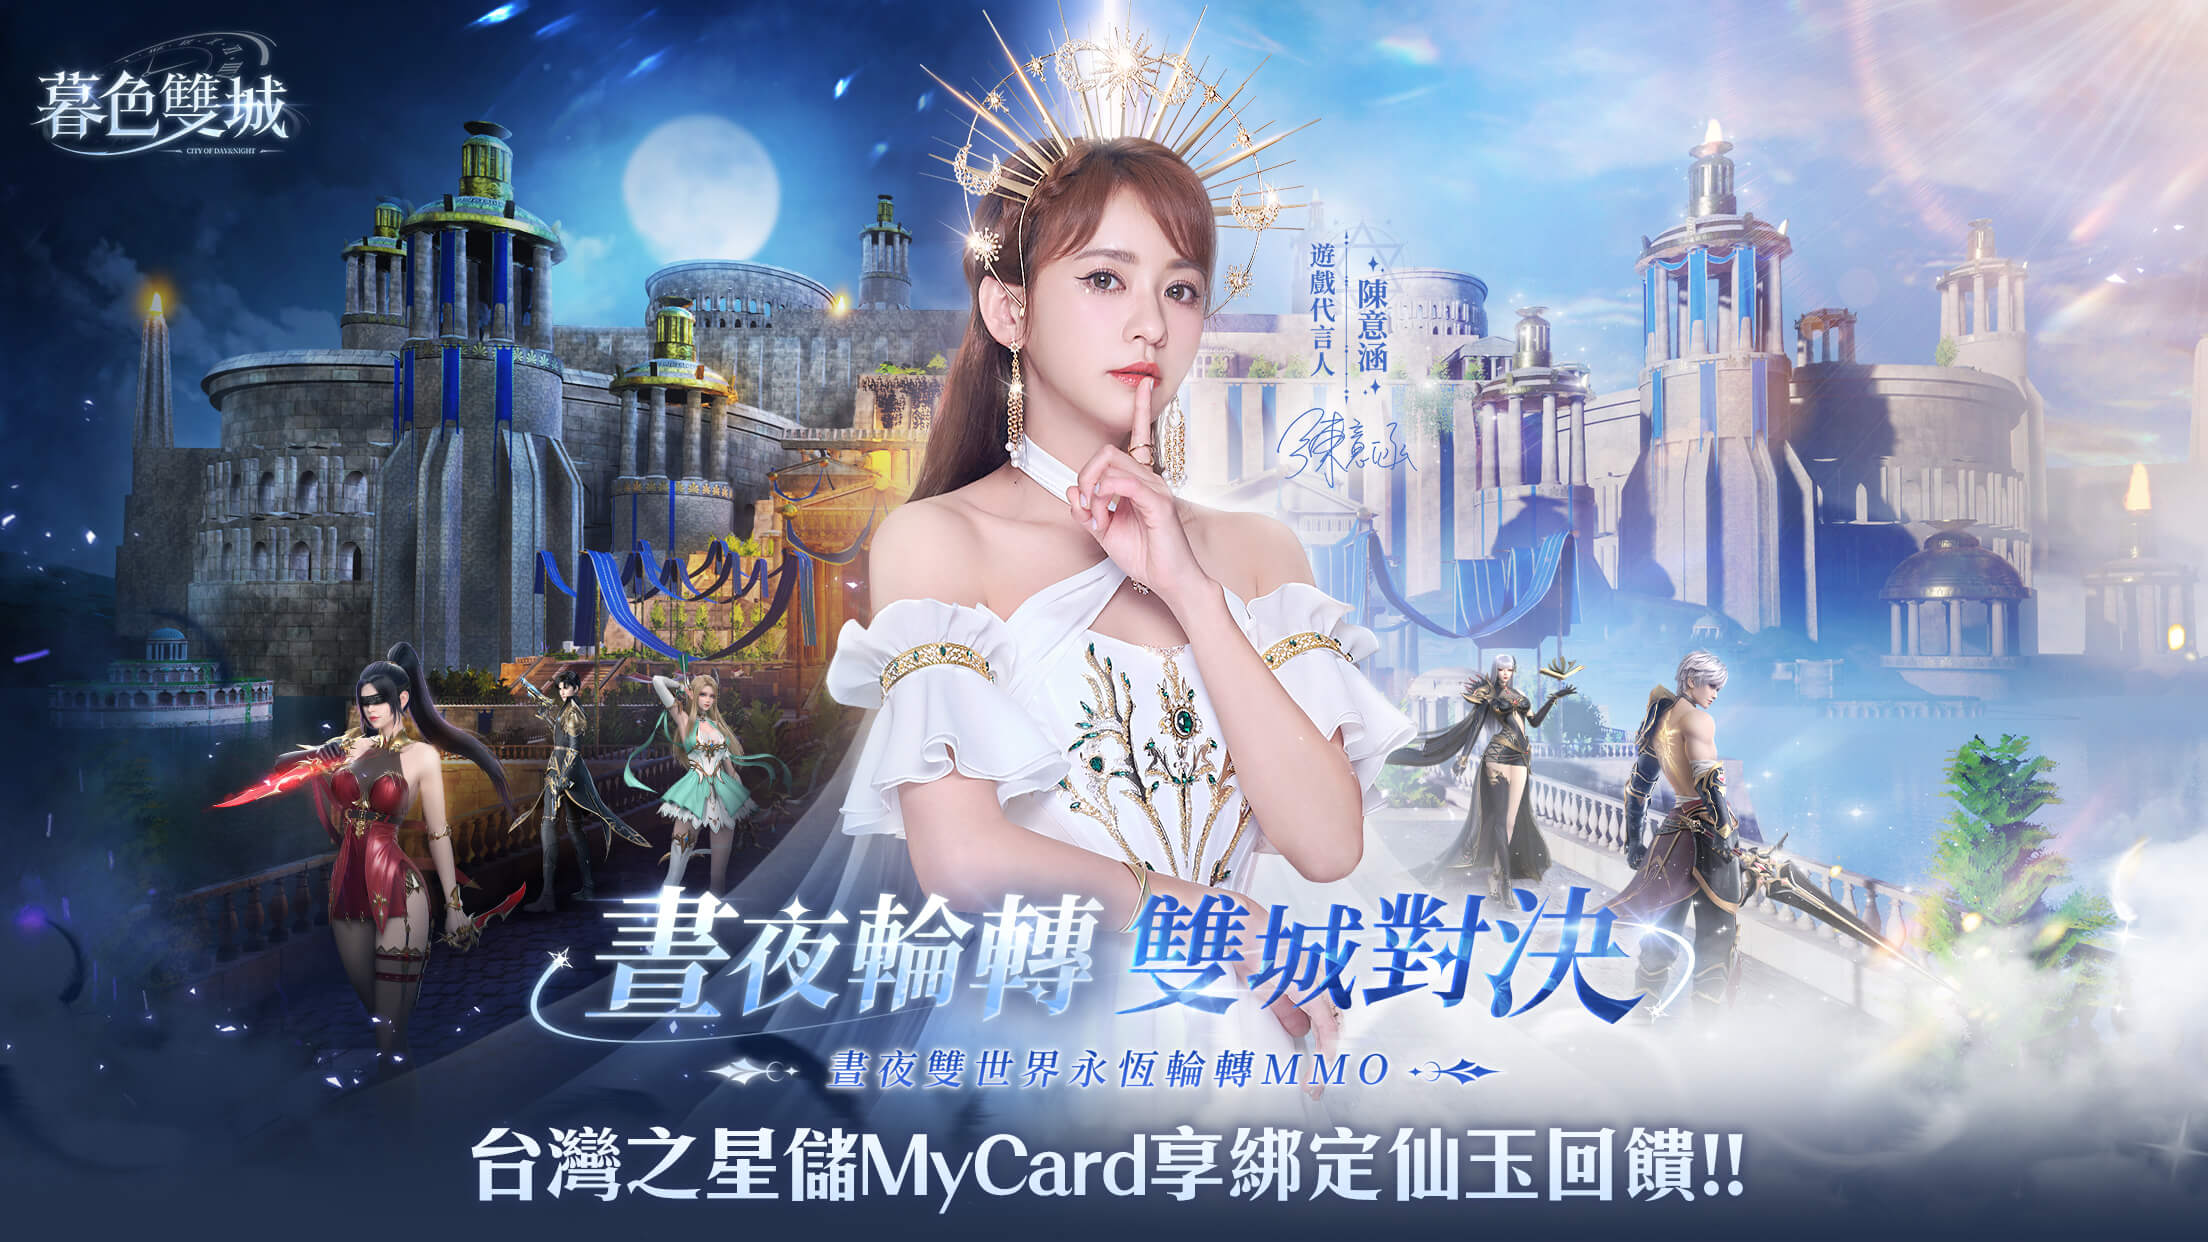   《暮色雙城》MyCard儲值享仙玉回饋 | 台灣之星